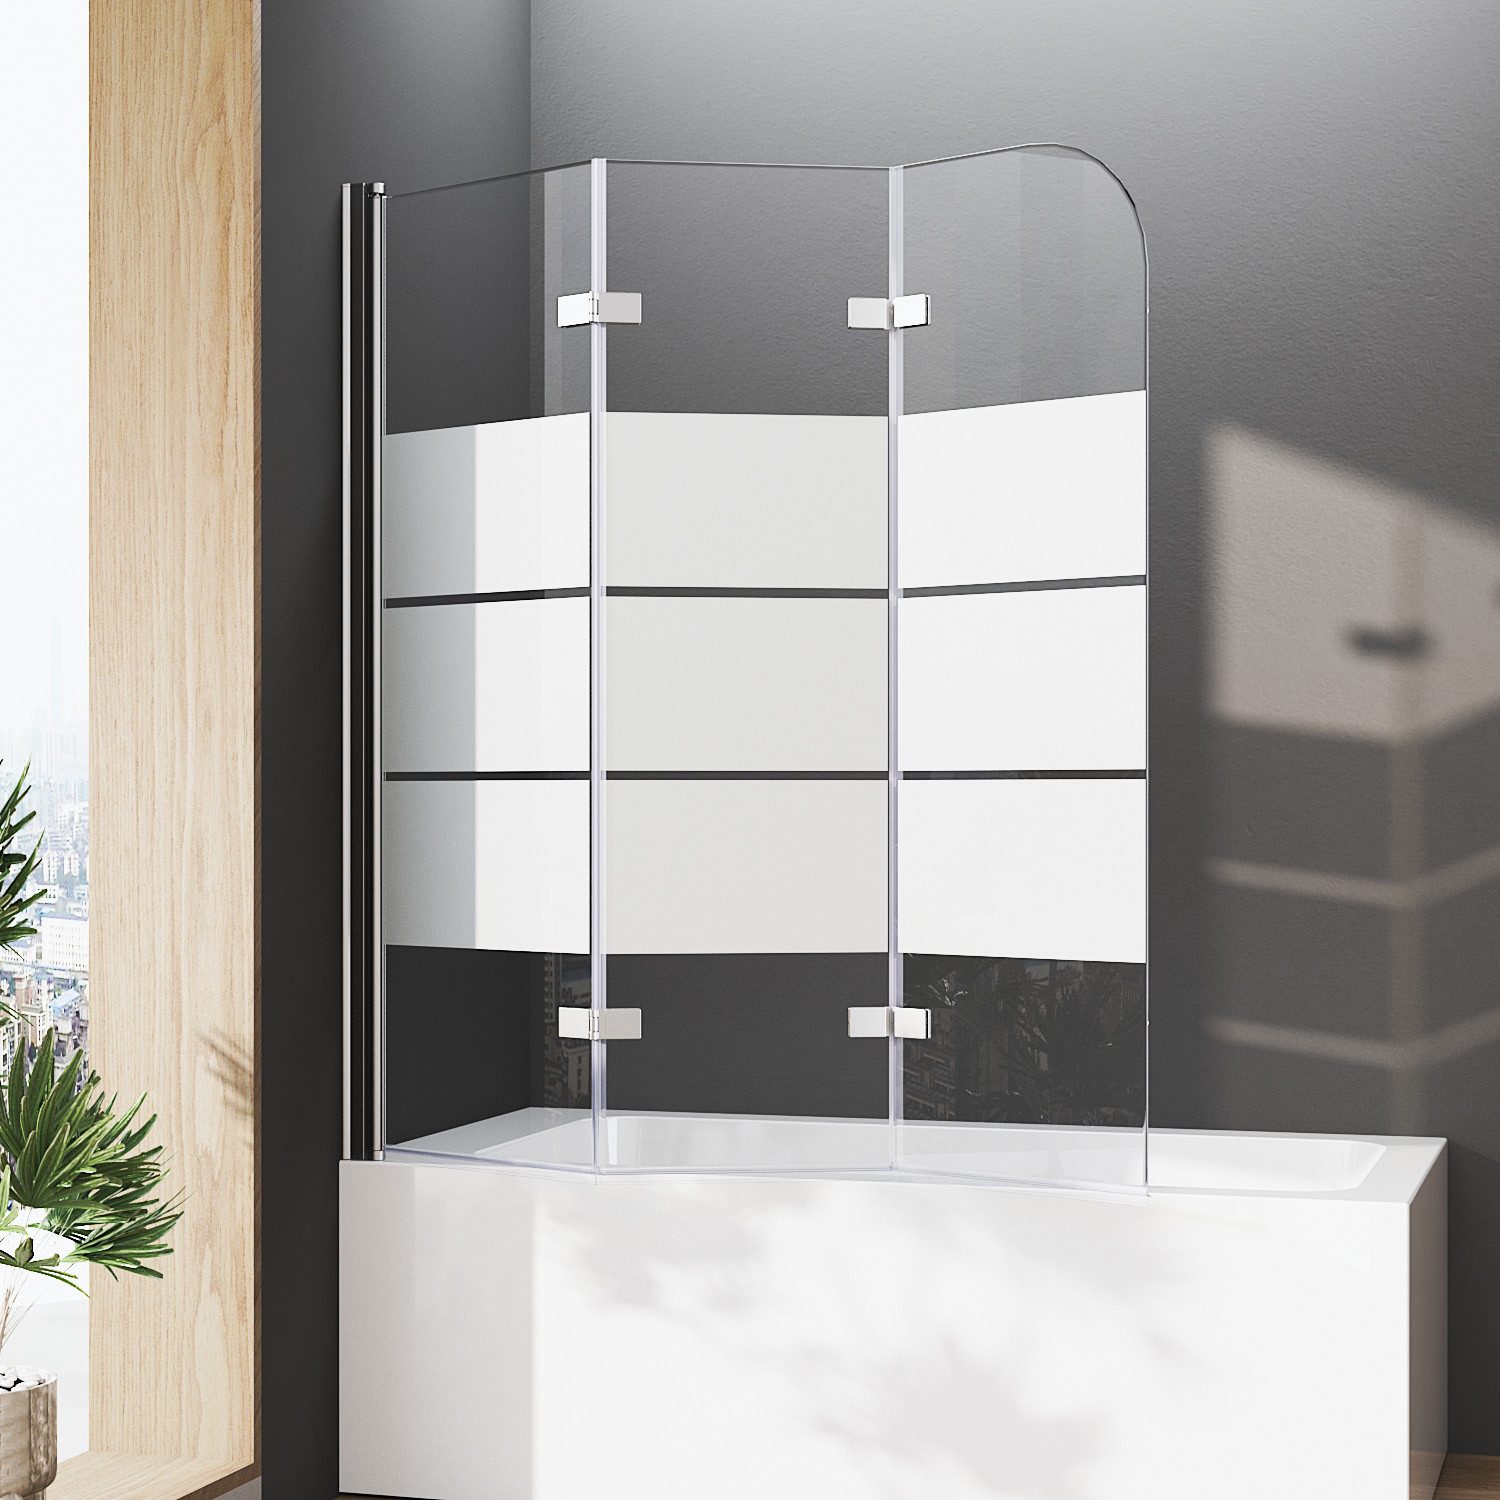 Hopibath Duschwand für Badewanne milchglas 130 x 140, 6mm Sicherheitsglas, (Badewannenfaltwand 3 teilig faltbar, 180° Faltwand), mit Aluprofi, Duschdichtungen